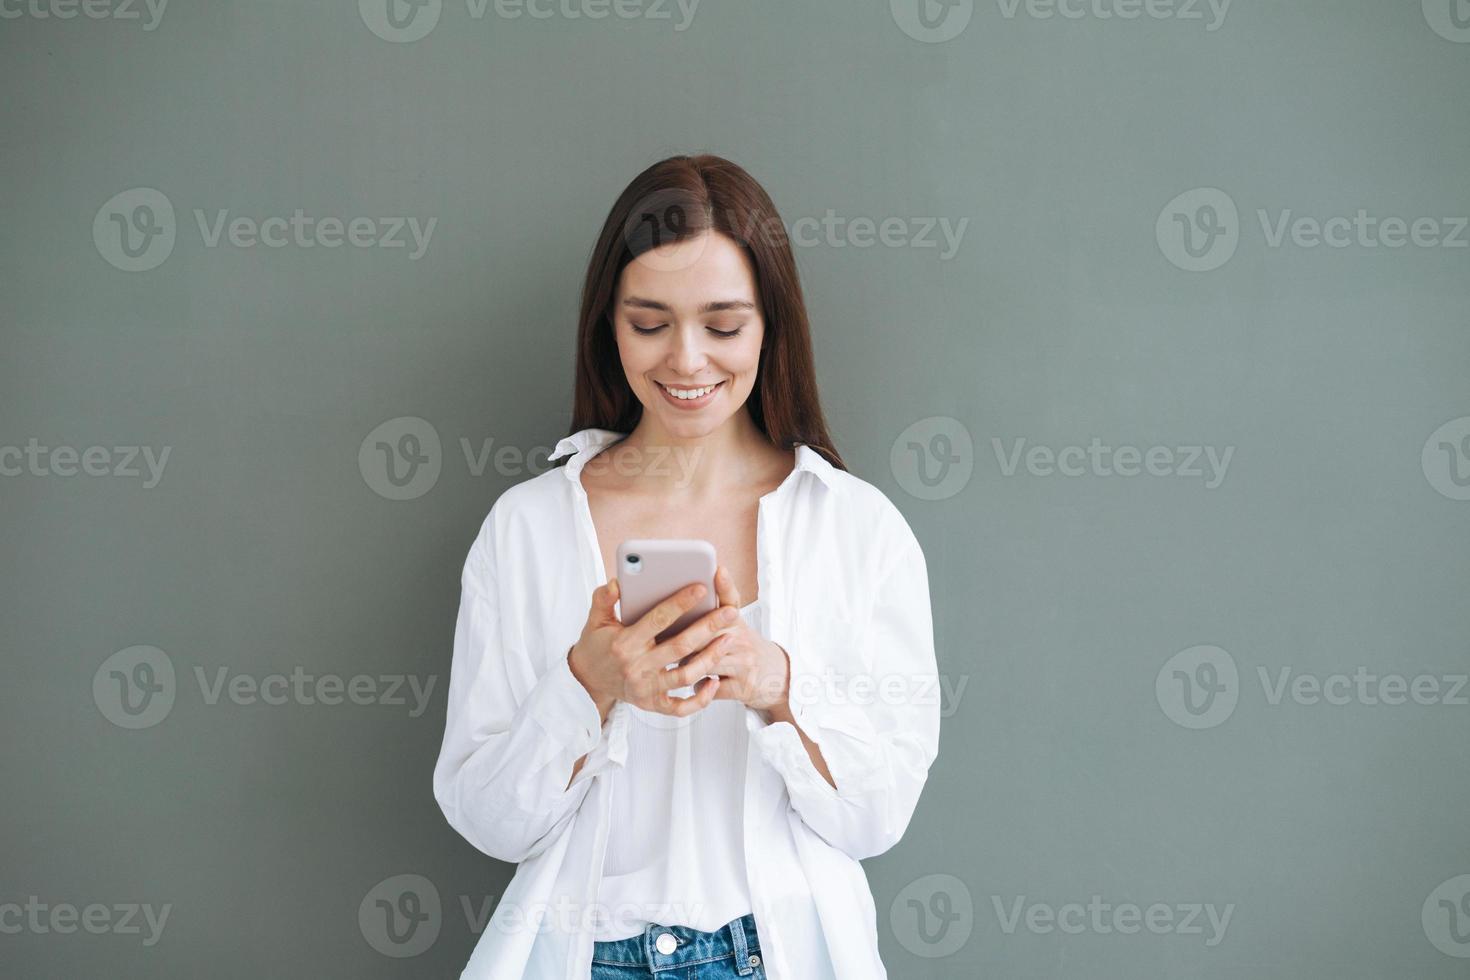 retrato de uma bela estudante sorridente com cabelos longos escuros na camisa branca, usando o celular na mão em fundo cinza isolado, geração z foto